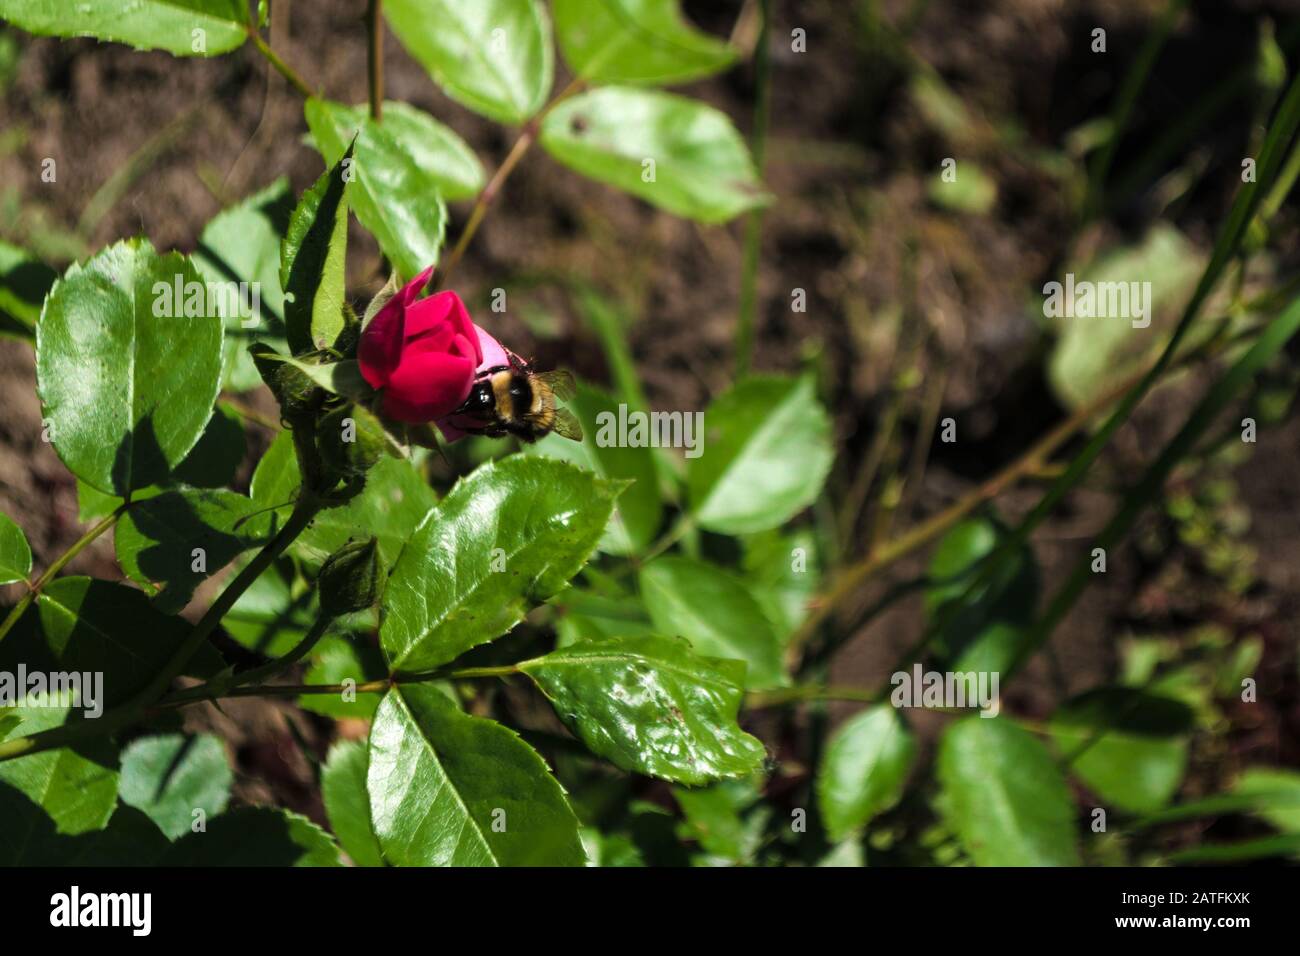 Nahaufnahme der grünen rosafarbenen Rosenblase und eines Bienentrinkwassers aus dem Tau auf dem Hintergrund der Blätter. Kleine schwarze Hummeln kriechen auf jungen fl Stockfoto